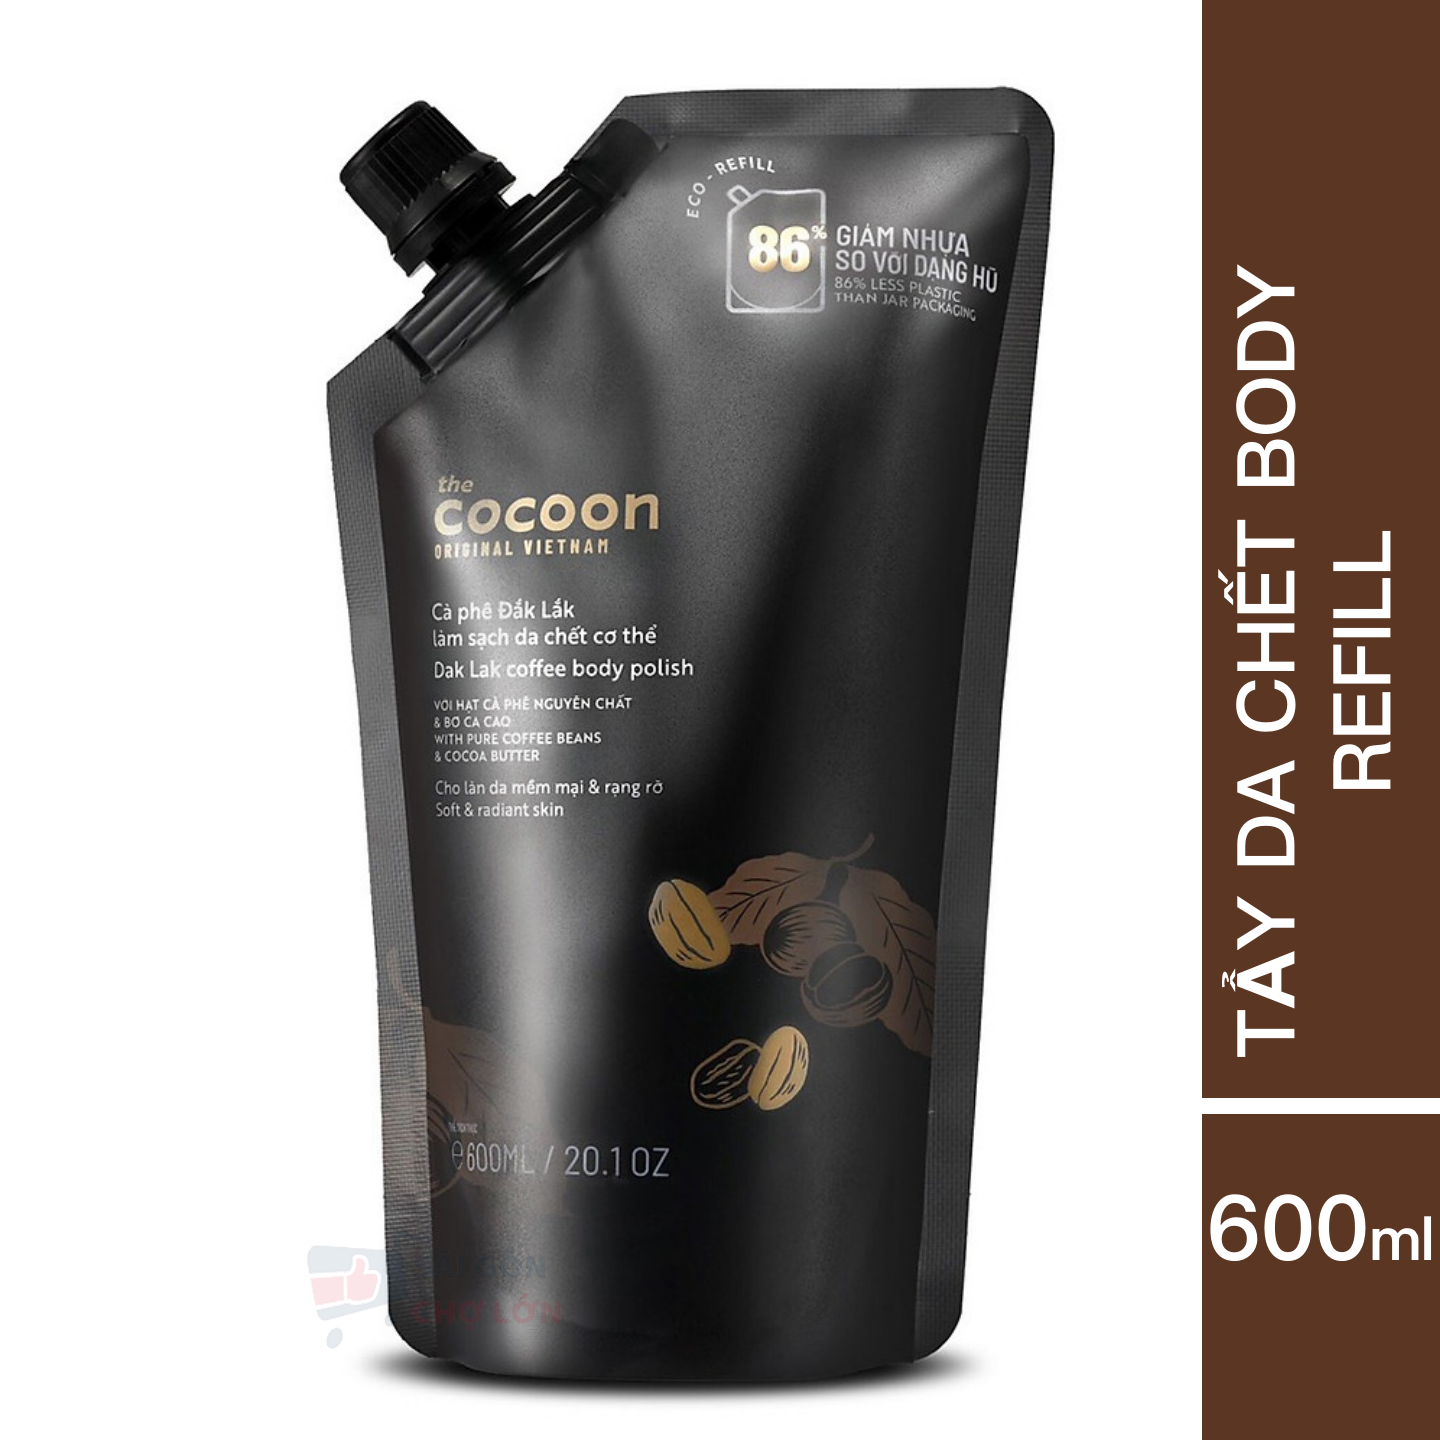 Túi Refill Cà phê Đắk Lắk làm sạch da chết cơ thể Cocoon cho làn da mềm mại & rạng rỡ 600ml